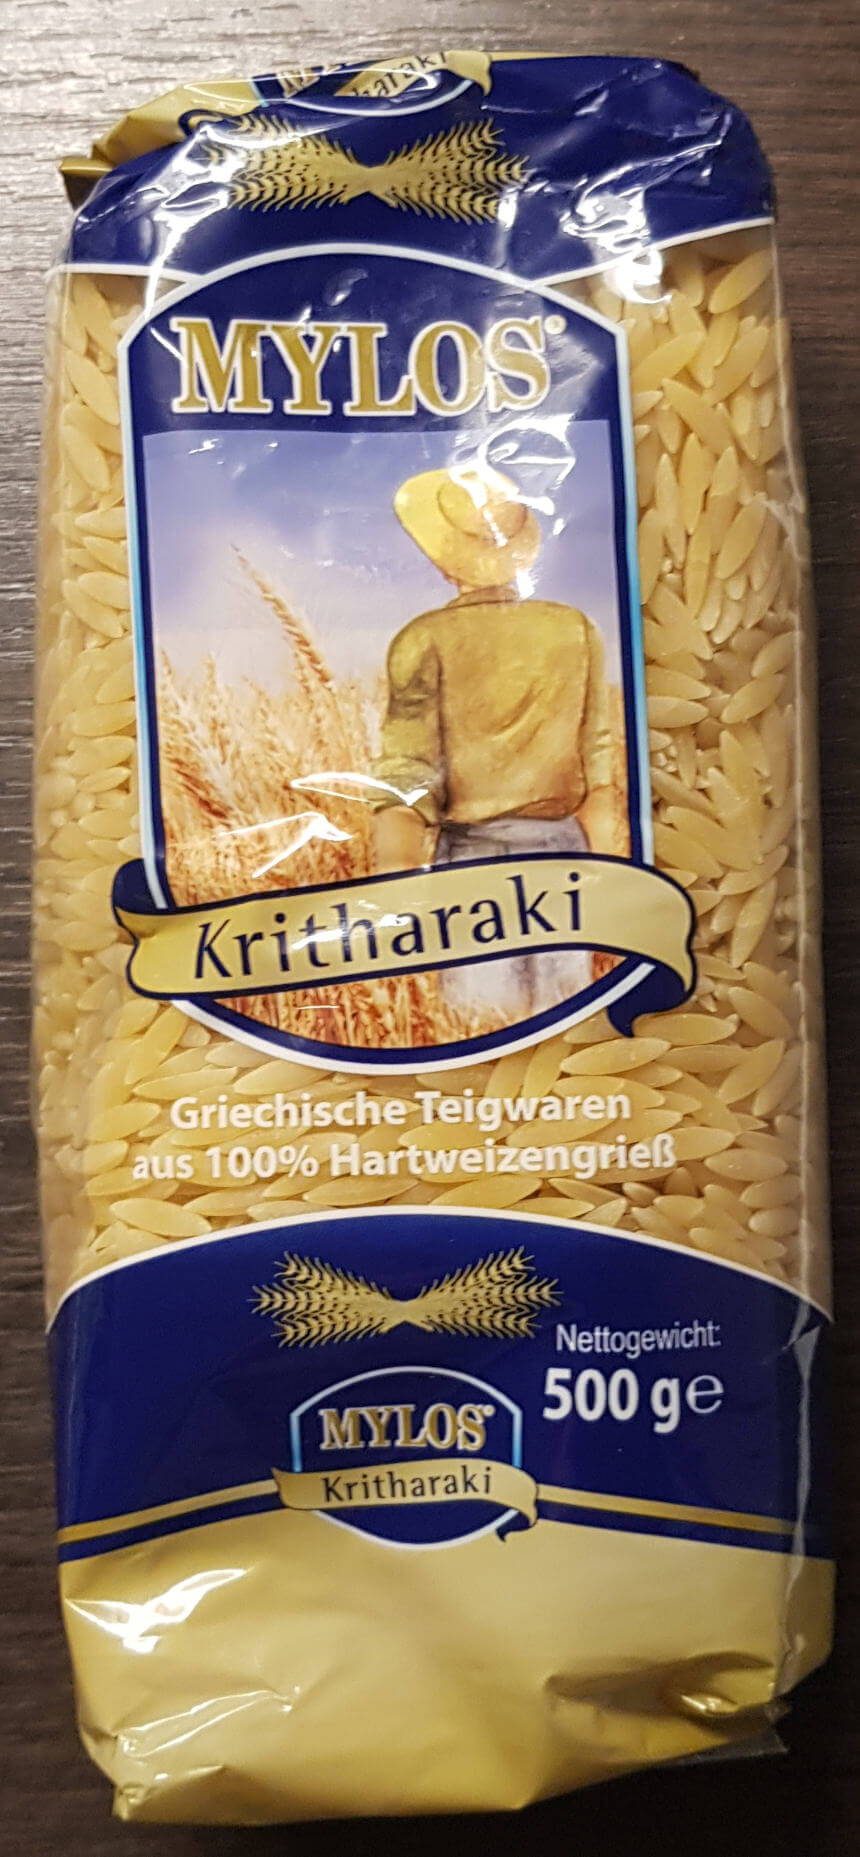 Packung Kritharaki, die man so auch im Supermarkt kaufen kann